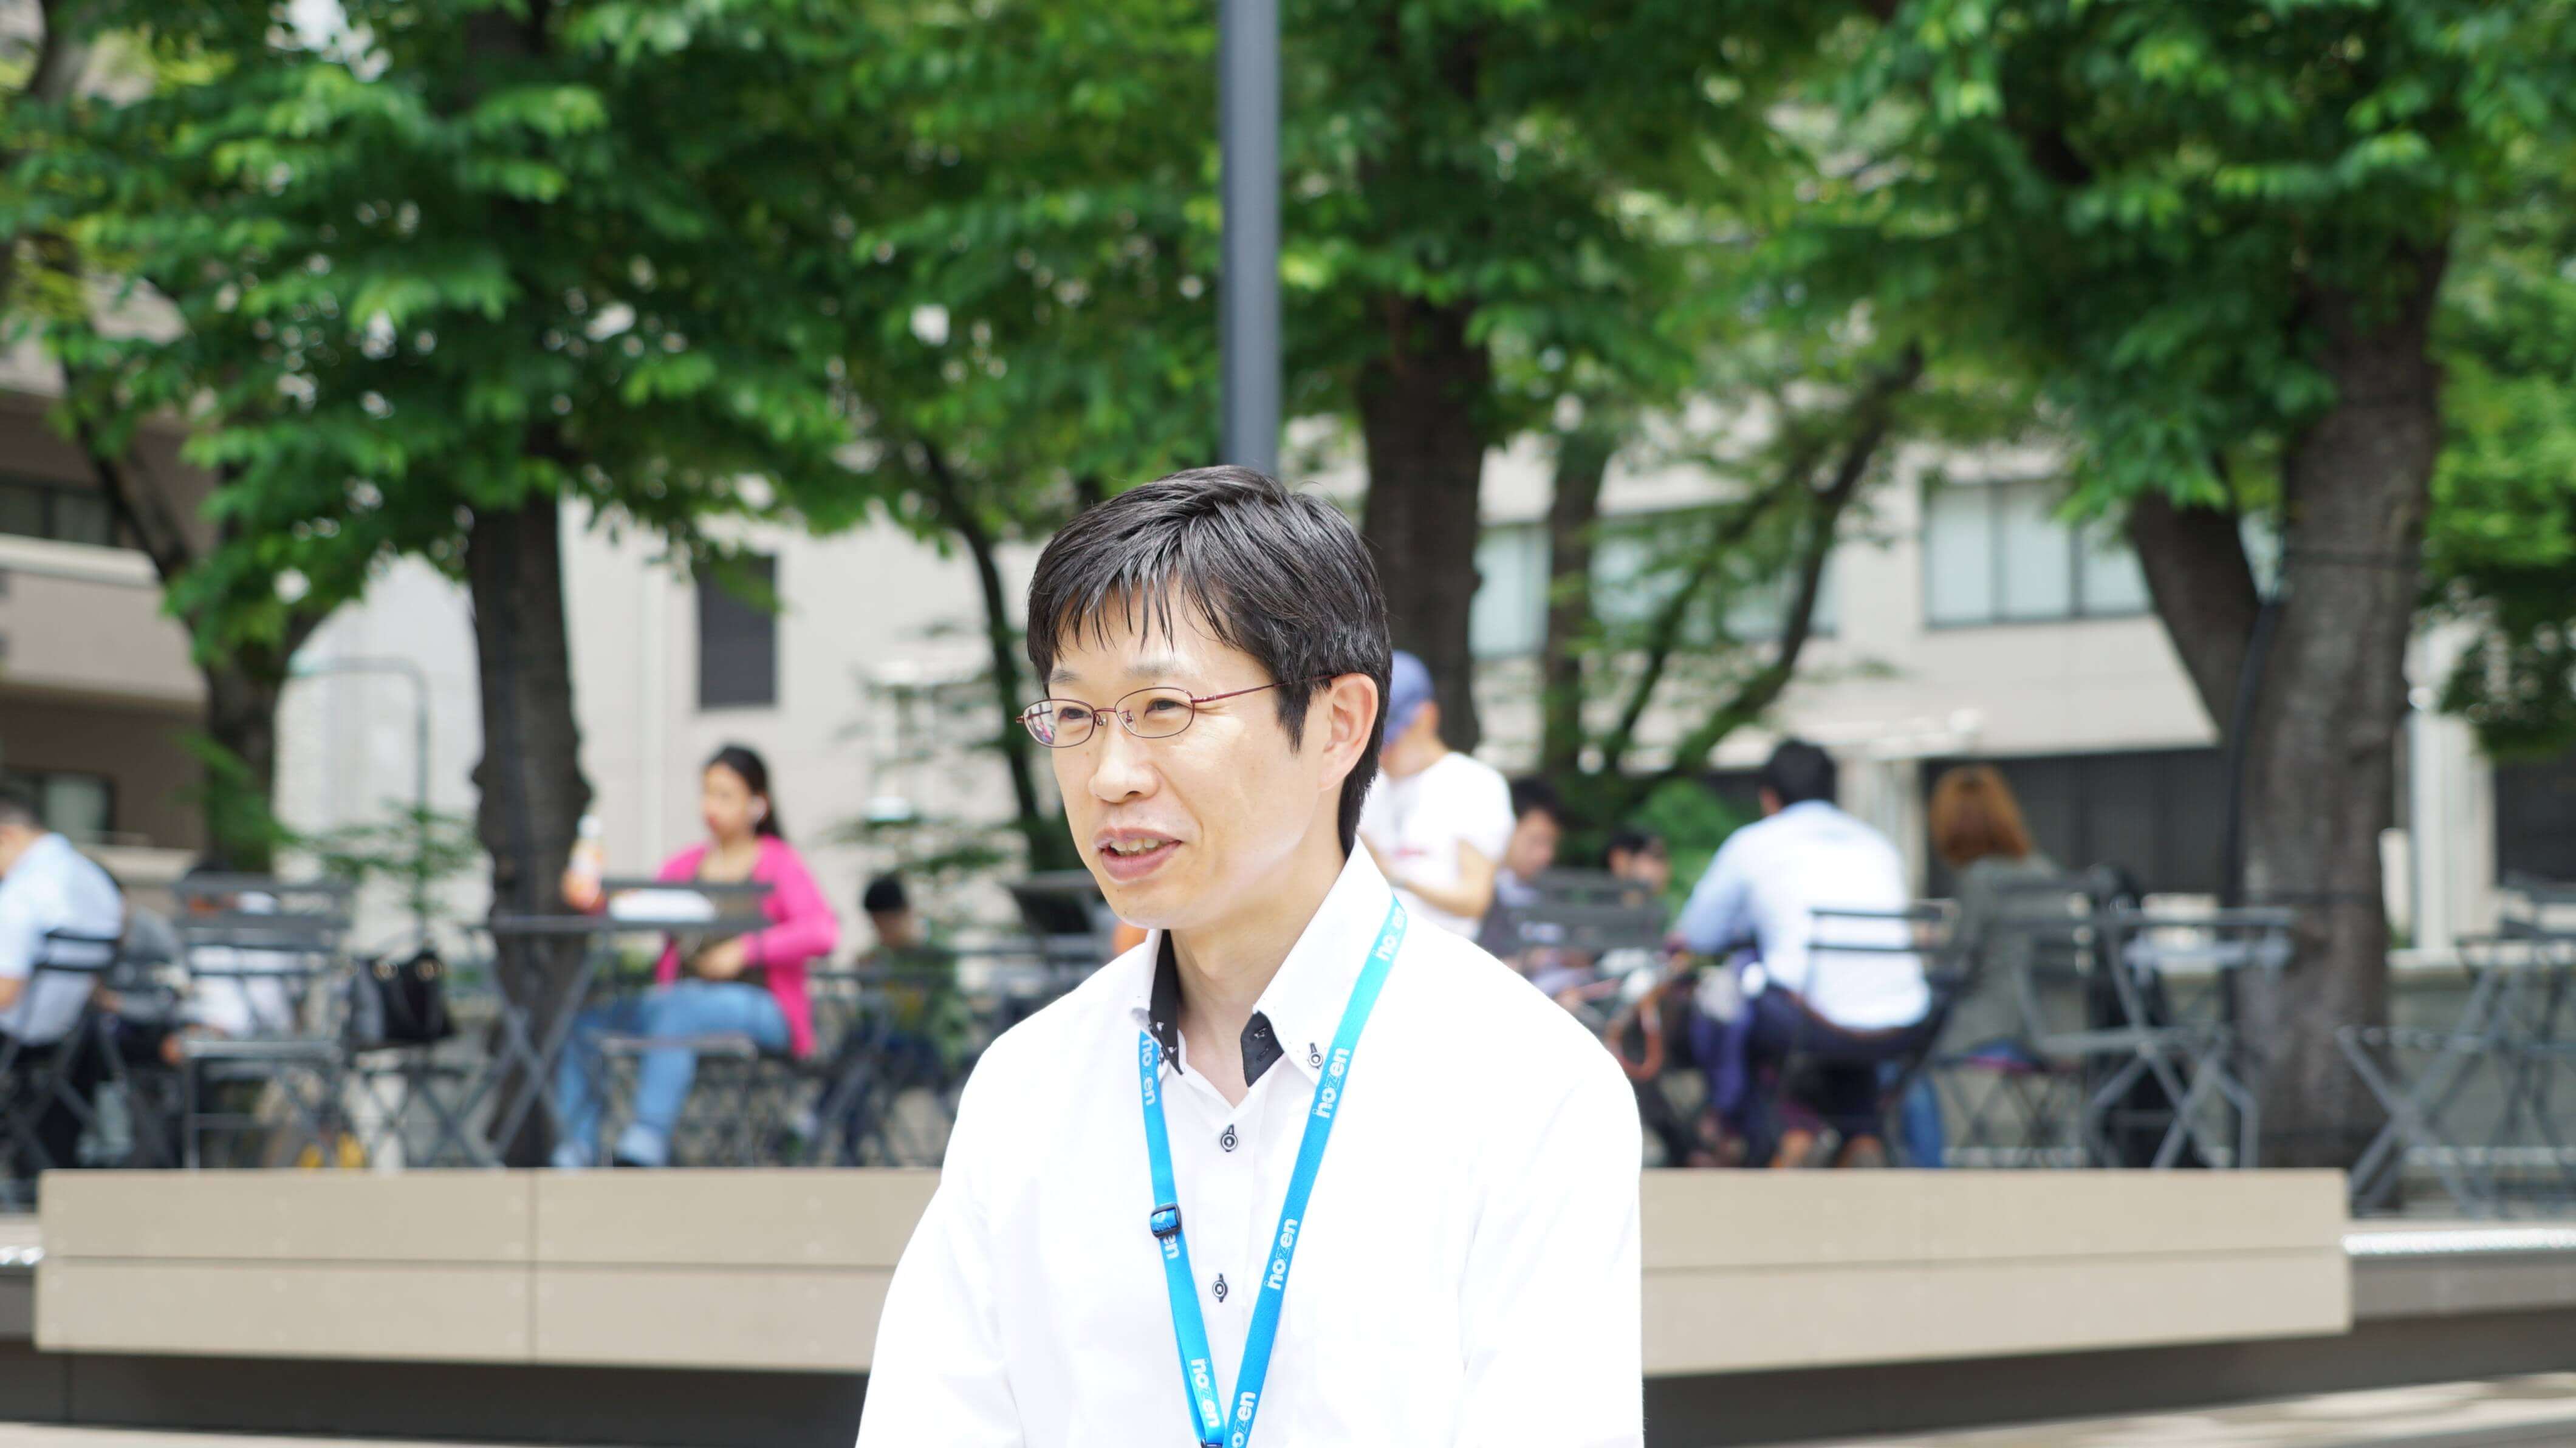 櫻井氏（1976年生まれ）コールセンターマネージャー